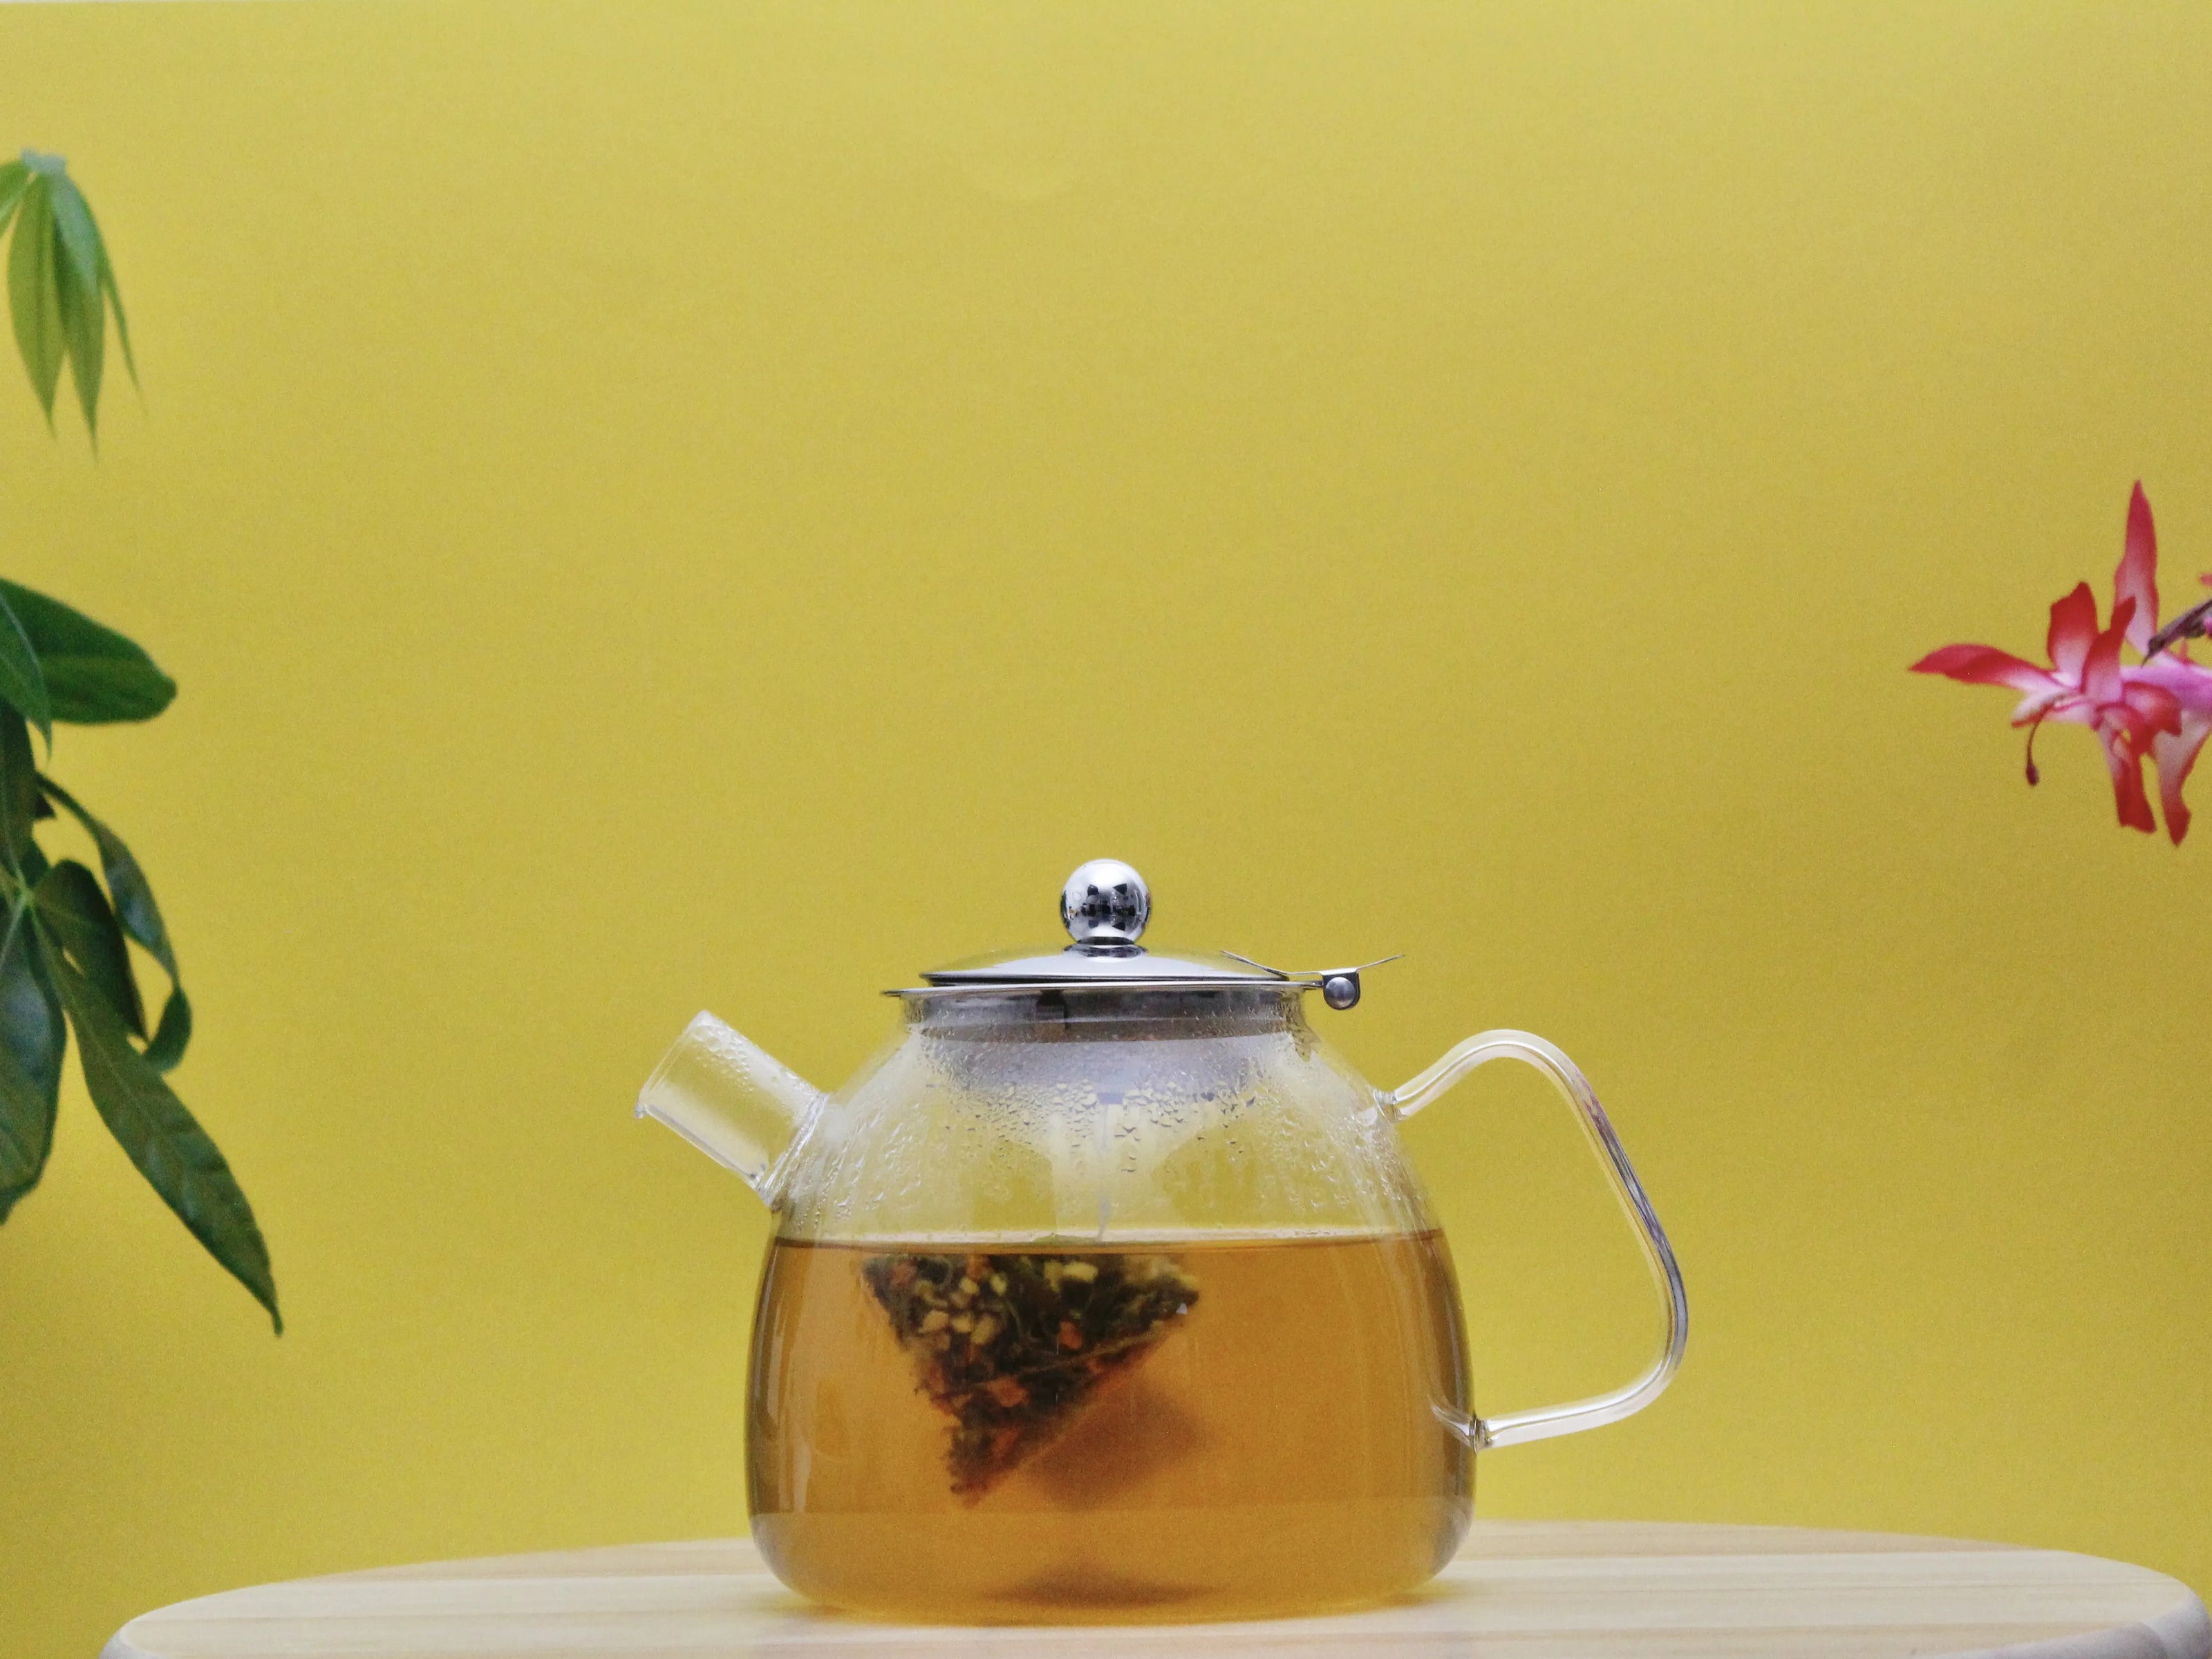 Frisch aufgebrühter Tee in der Teekanne mit nachhaltigem Pyramidenbeutel für Ayurveda Tee, Kräutertee oder Wellness Tee.